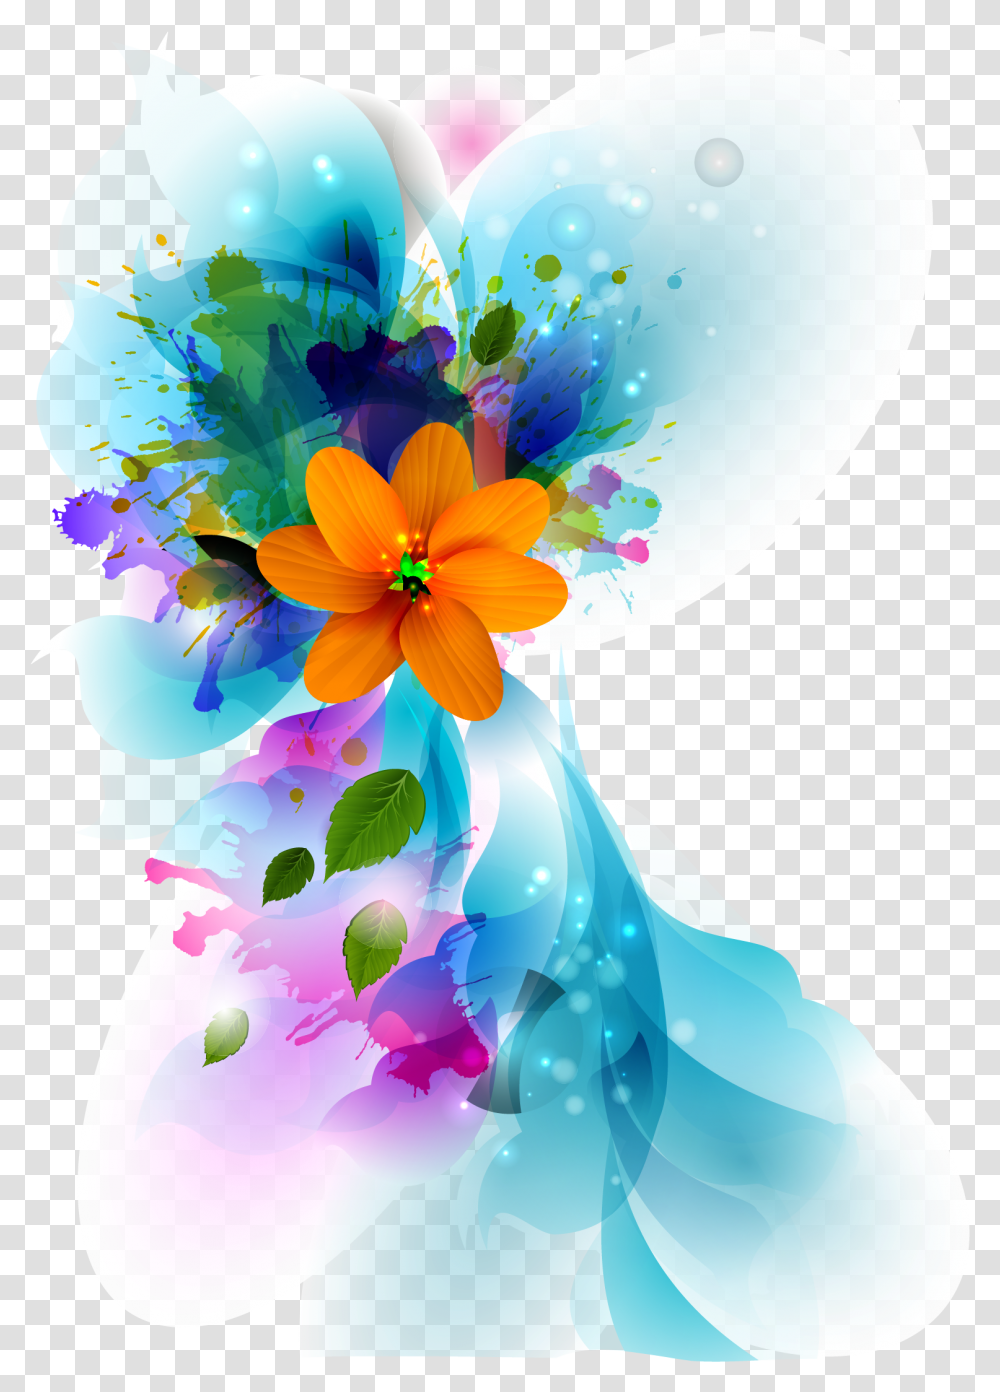 Color Wallpaper Encapsulated Flora Flower Vector Background, Graphics, Art, Floral Design, Pattern Transparent Png